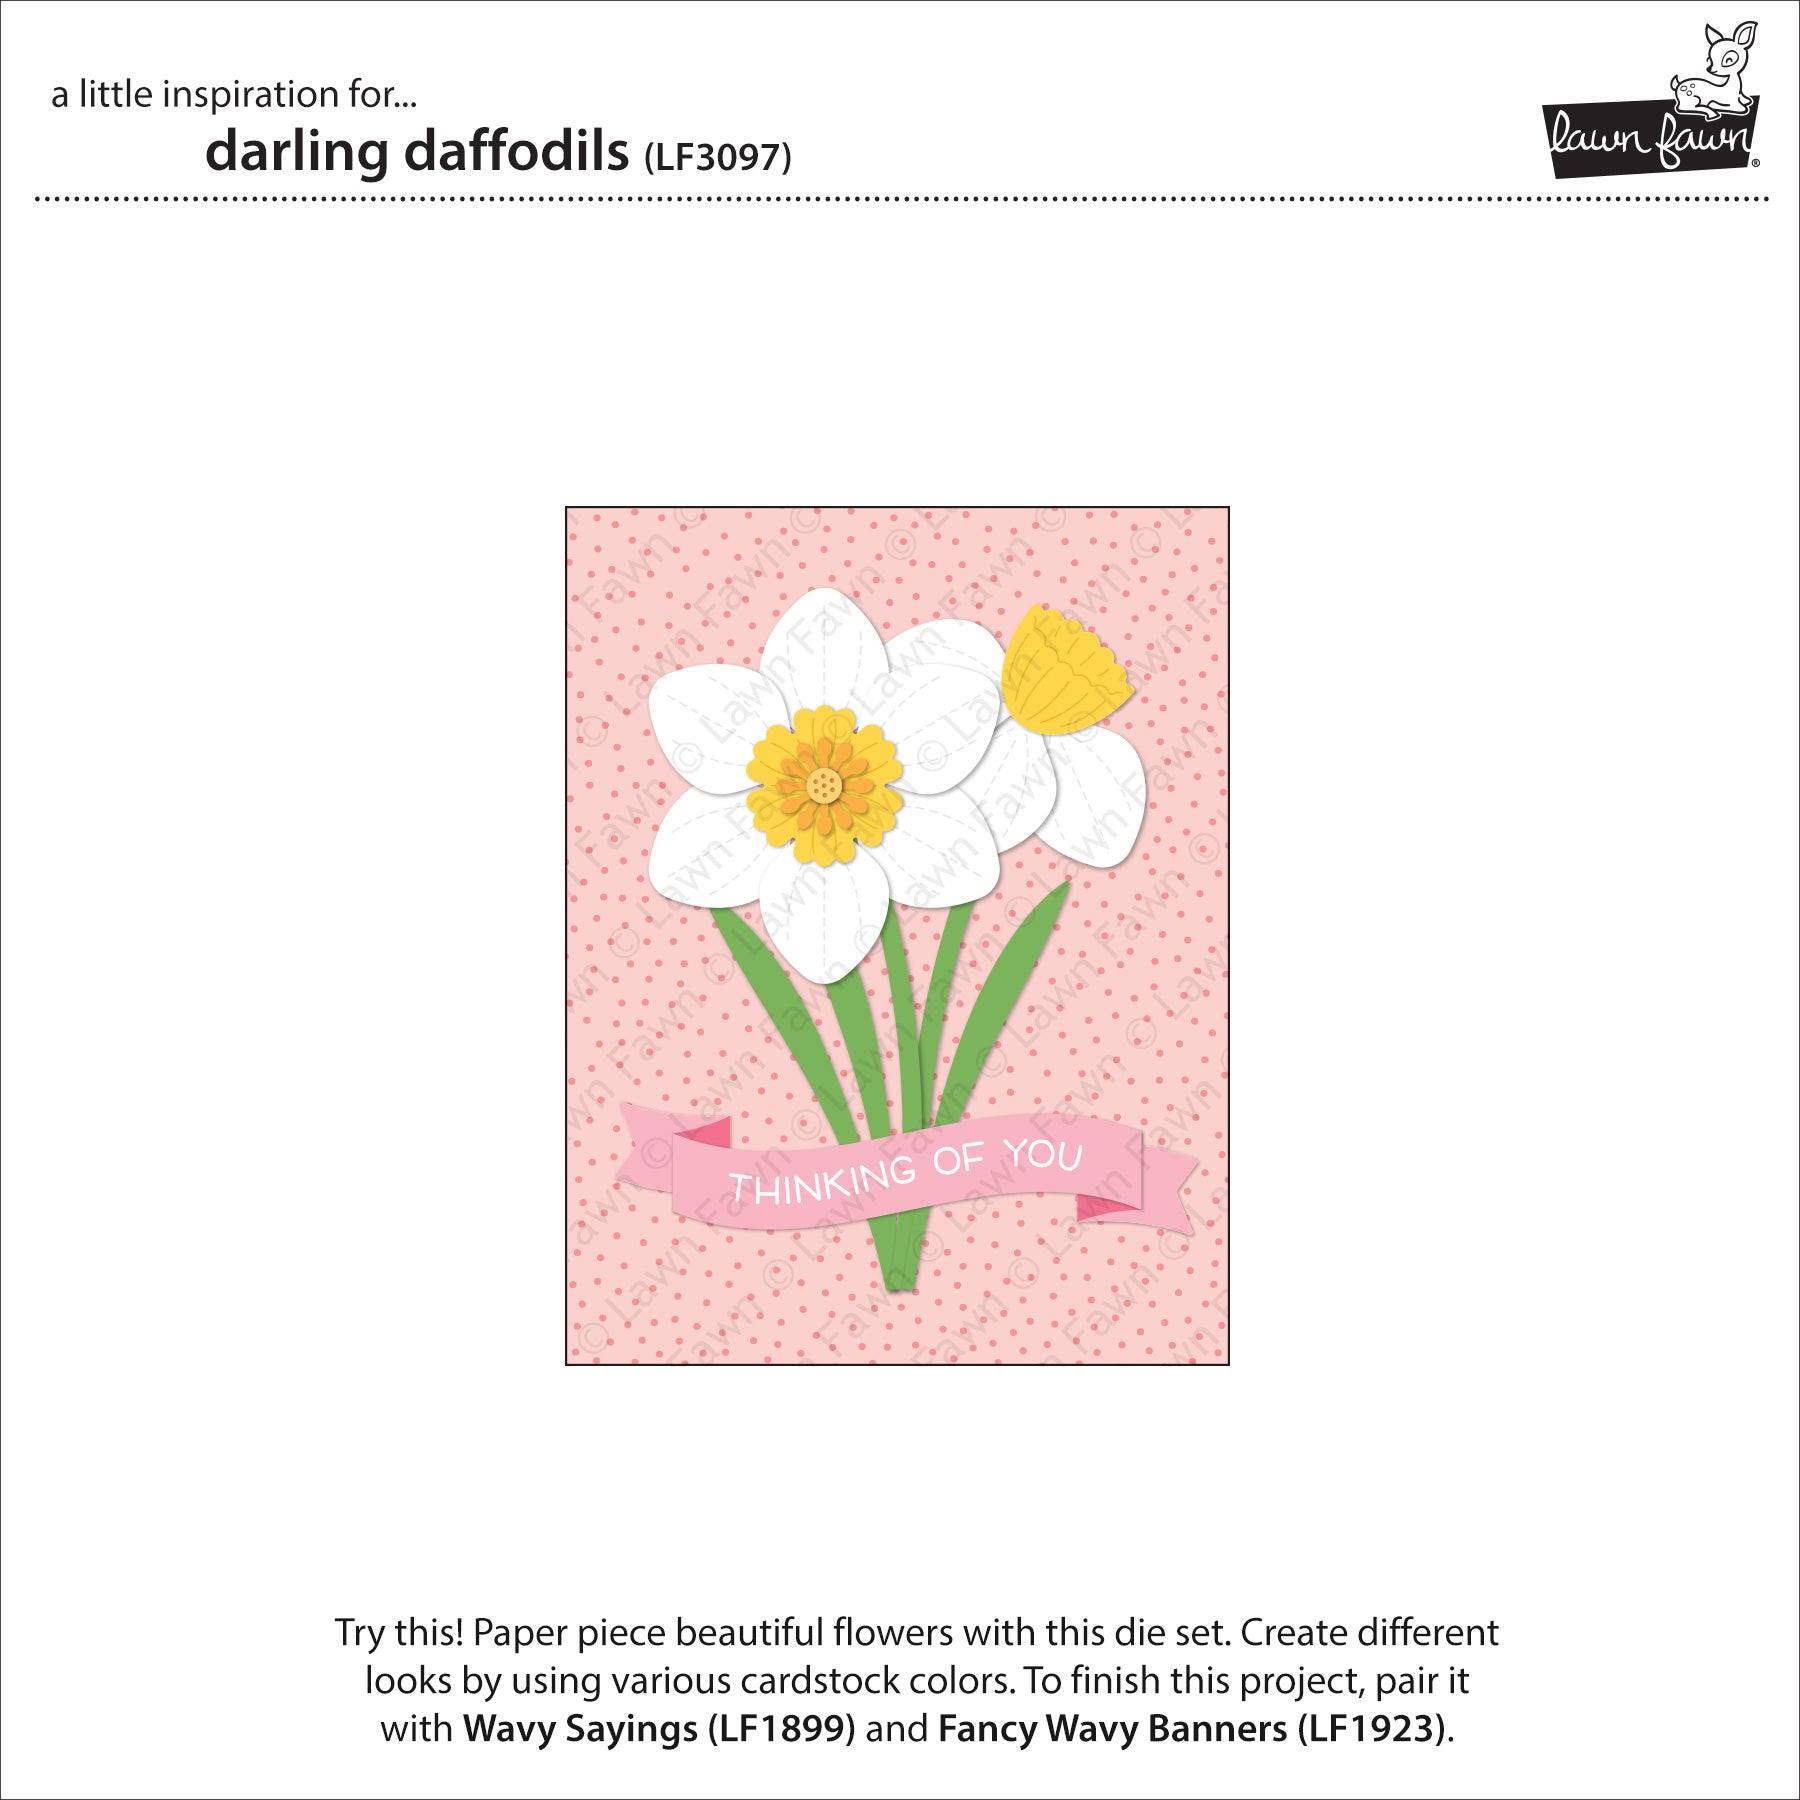 darling daffodils